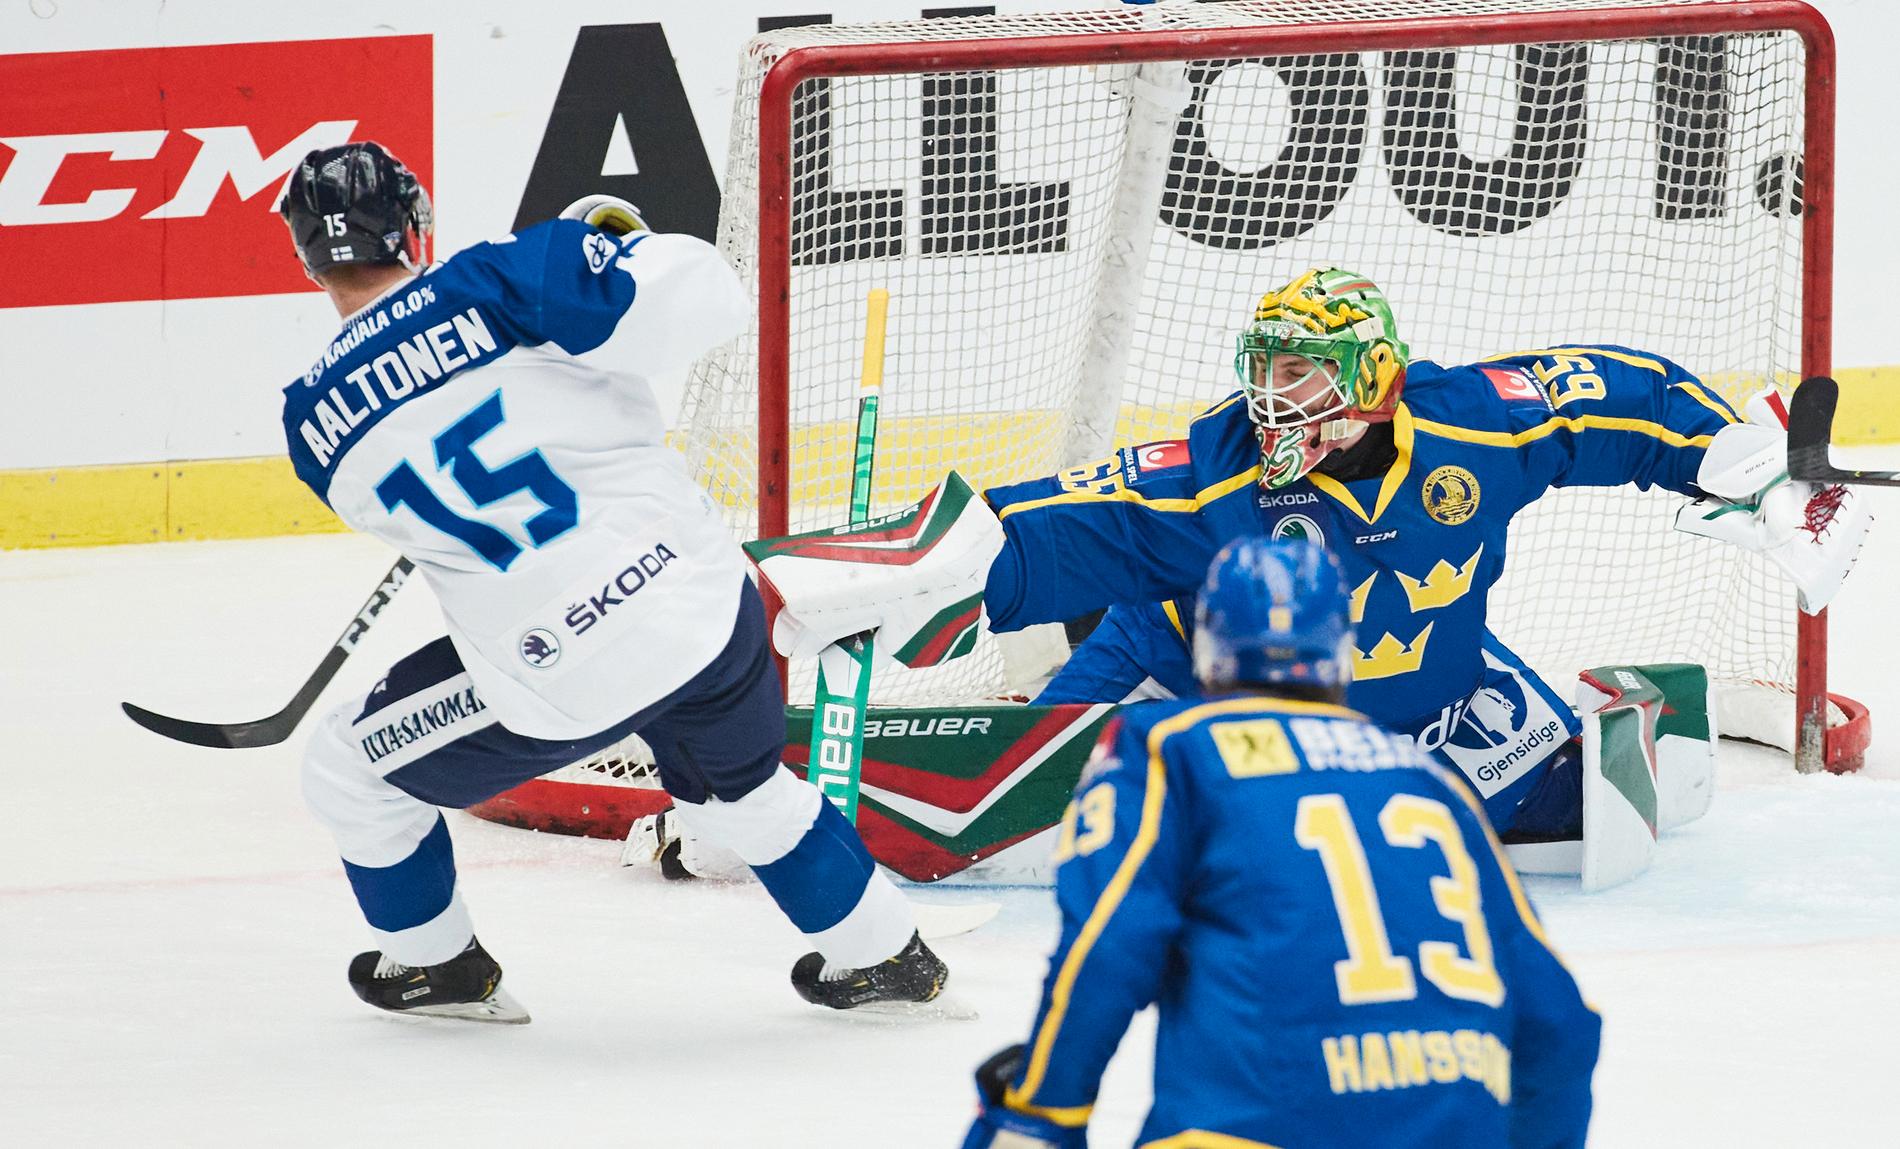 Målvaktsdebutanten Christoffer Rifalk håller undan när Finlands Miro Aaltonen oroar.